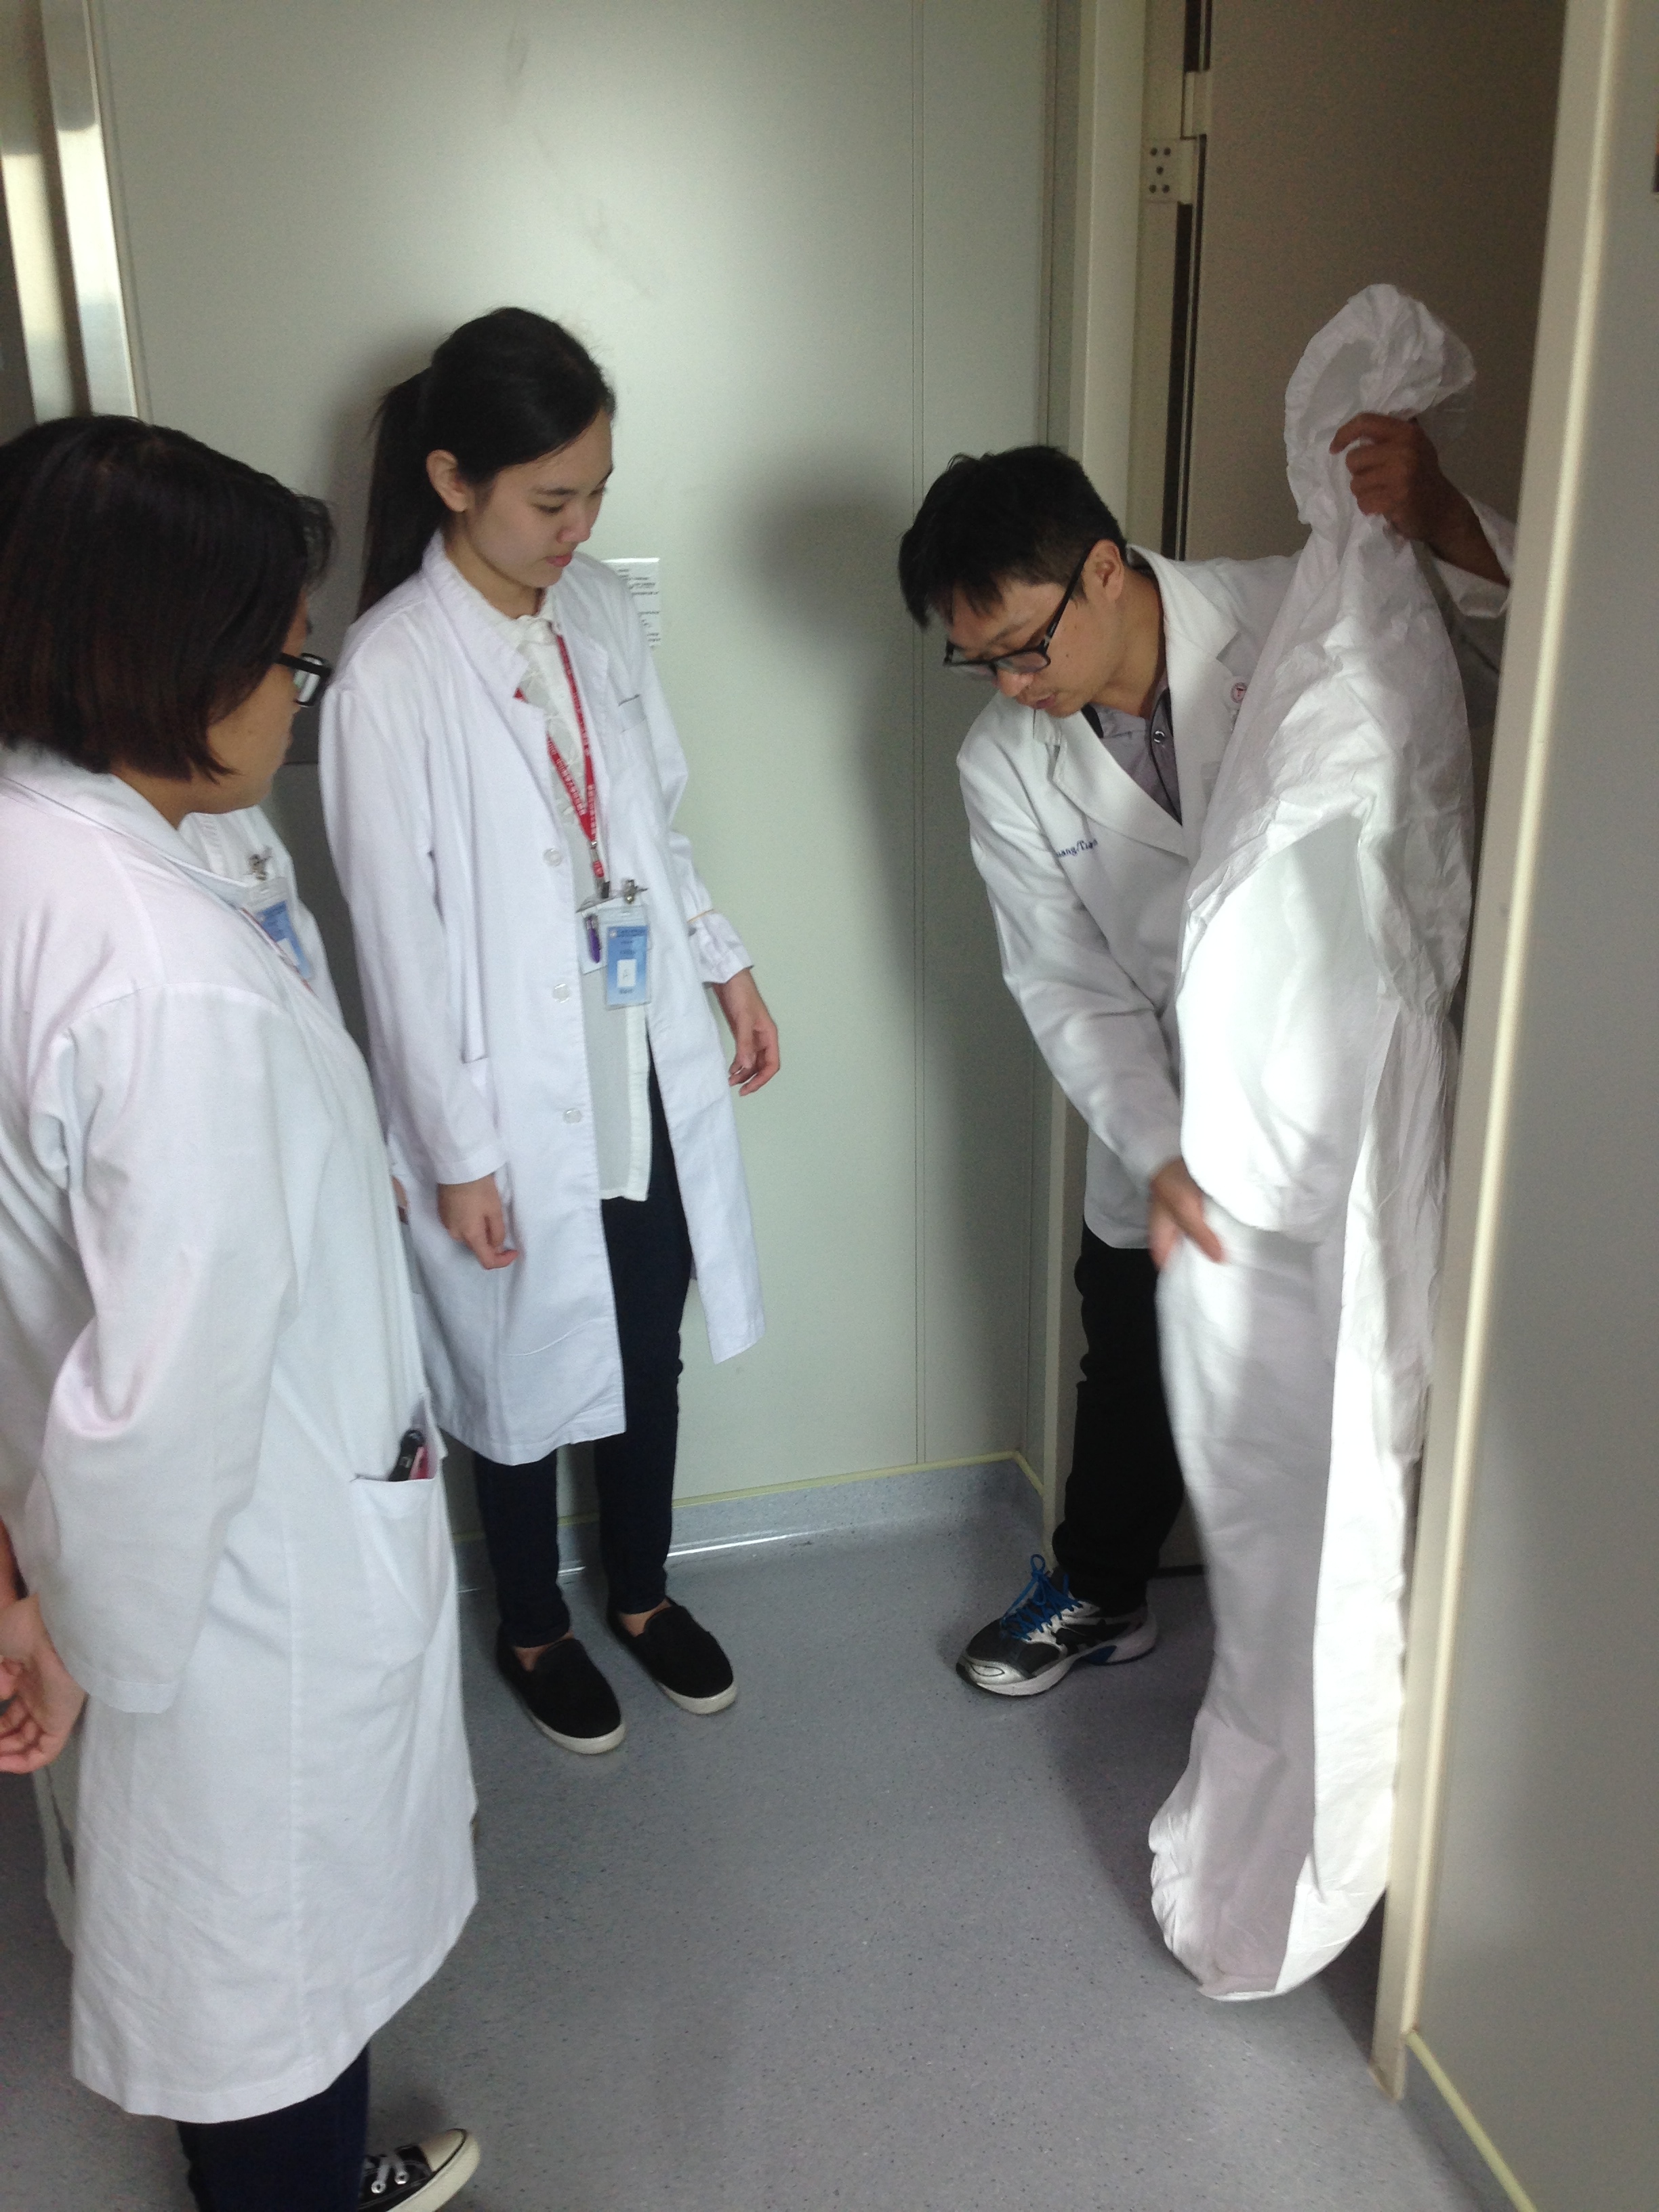 珍貴的海外體驗 -- 台灣中山醫學大學醫院 - Photo - 43